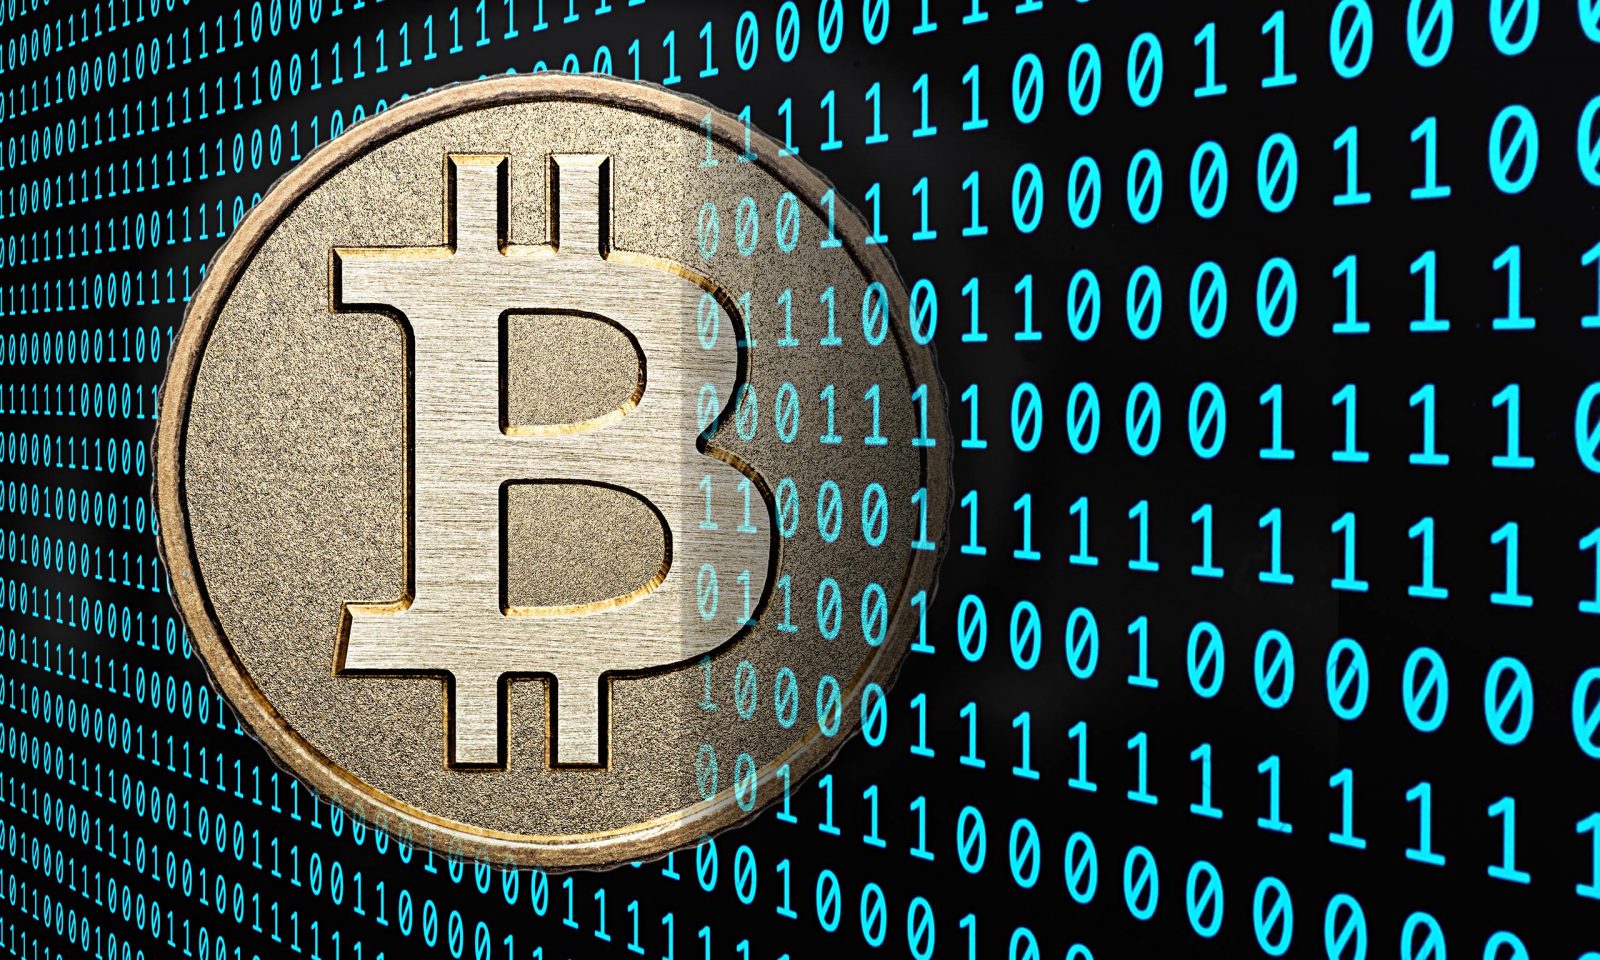 ¿Qué es un Bitcoin y porqué se habla tanto de esta moneda? 970 Universal